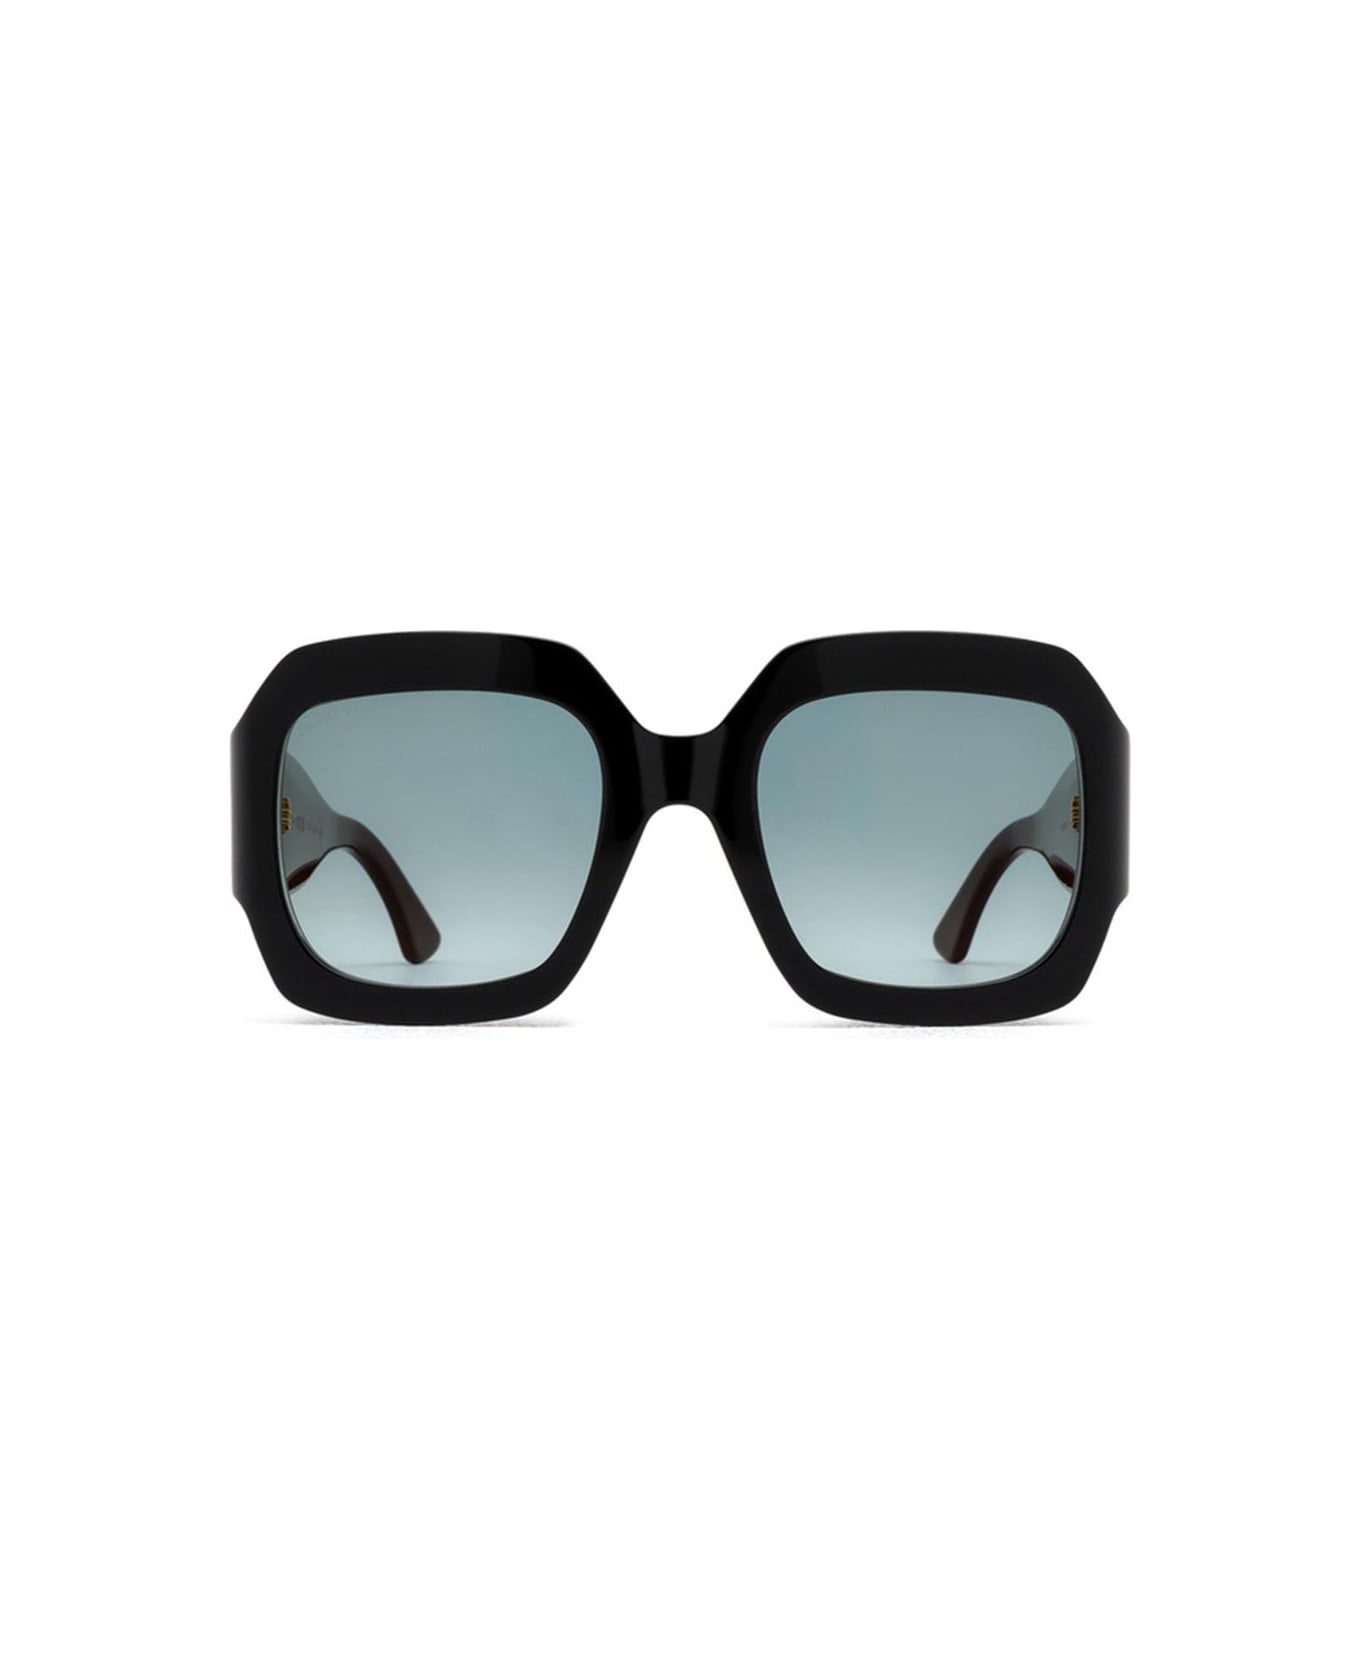 Cartier Eyewear Sunglasses - Nero/Verde サングラス